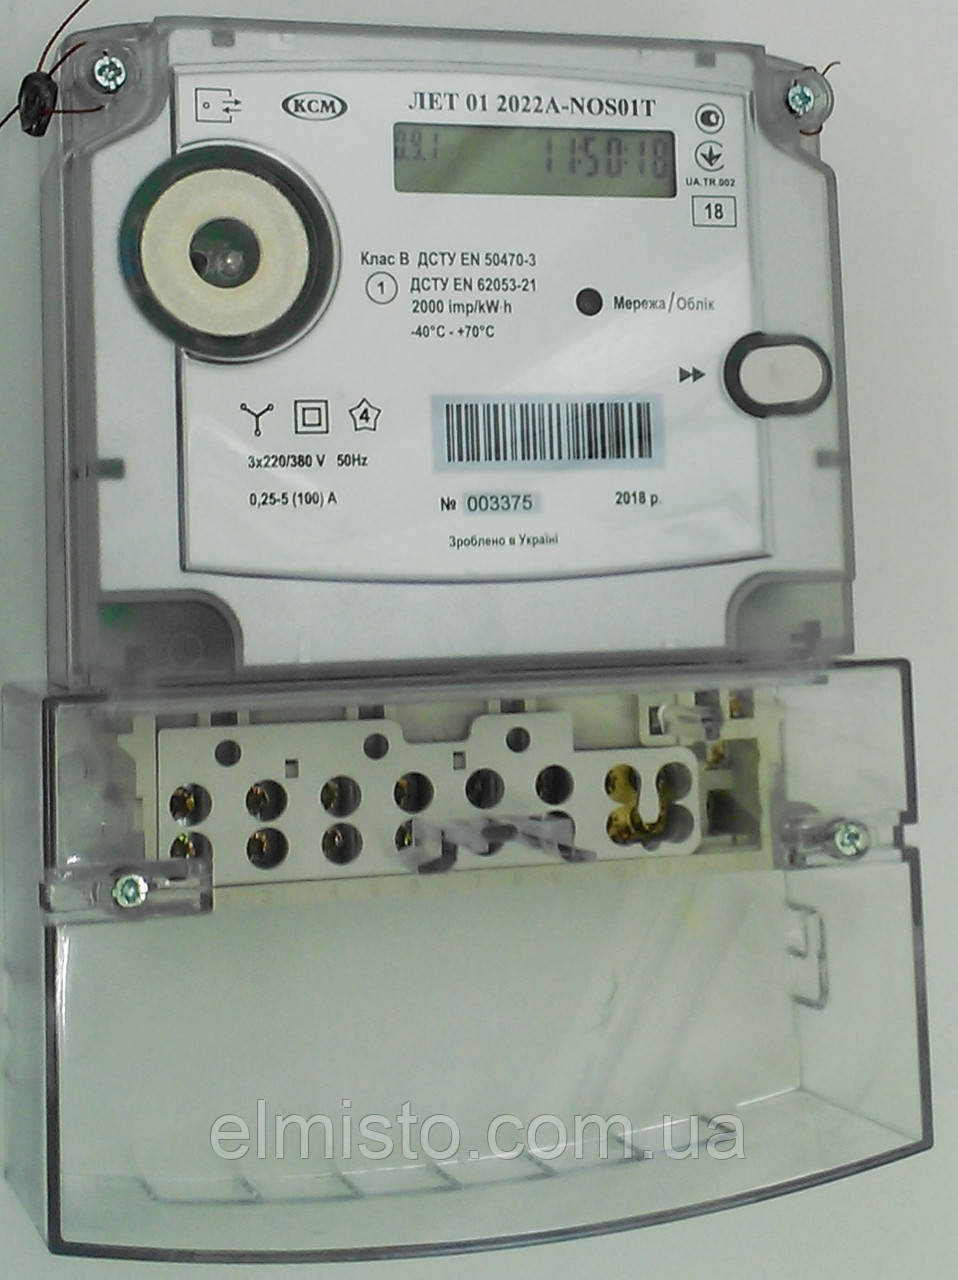 Электросчетчики трехфазные многотарифные ЛЕТ 01 2022A-NOS01T, продажа .